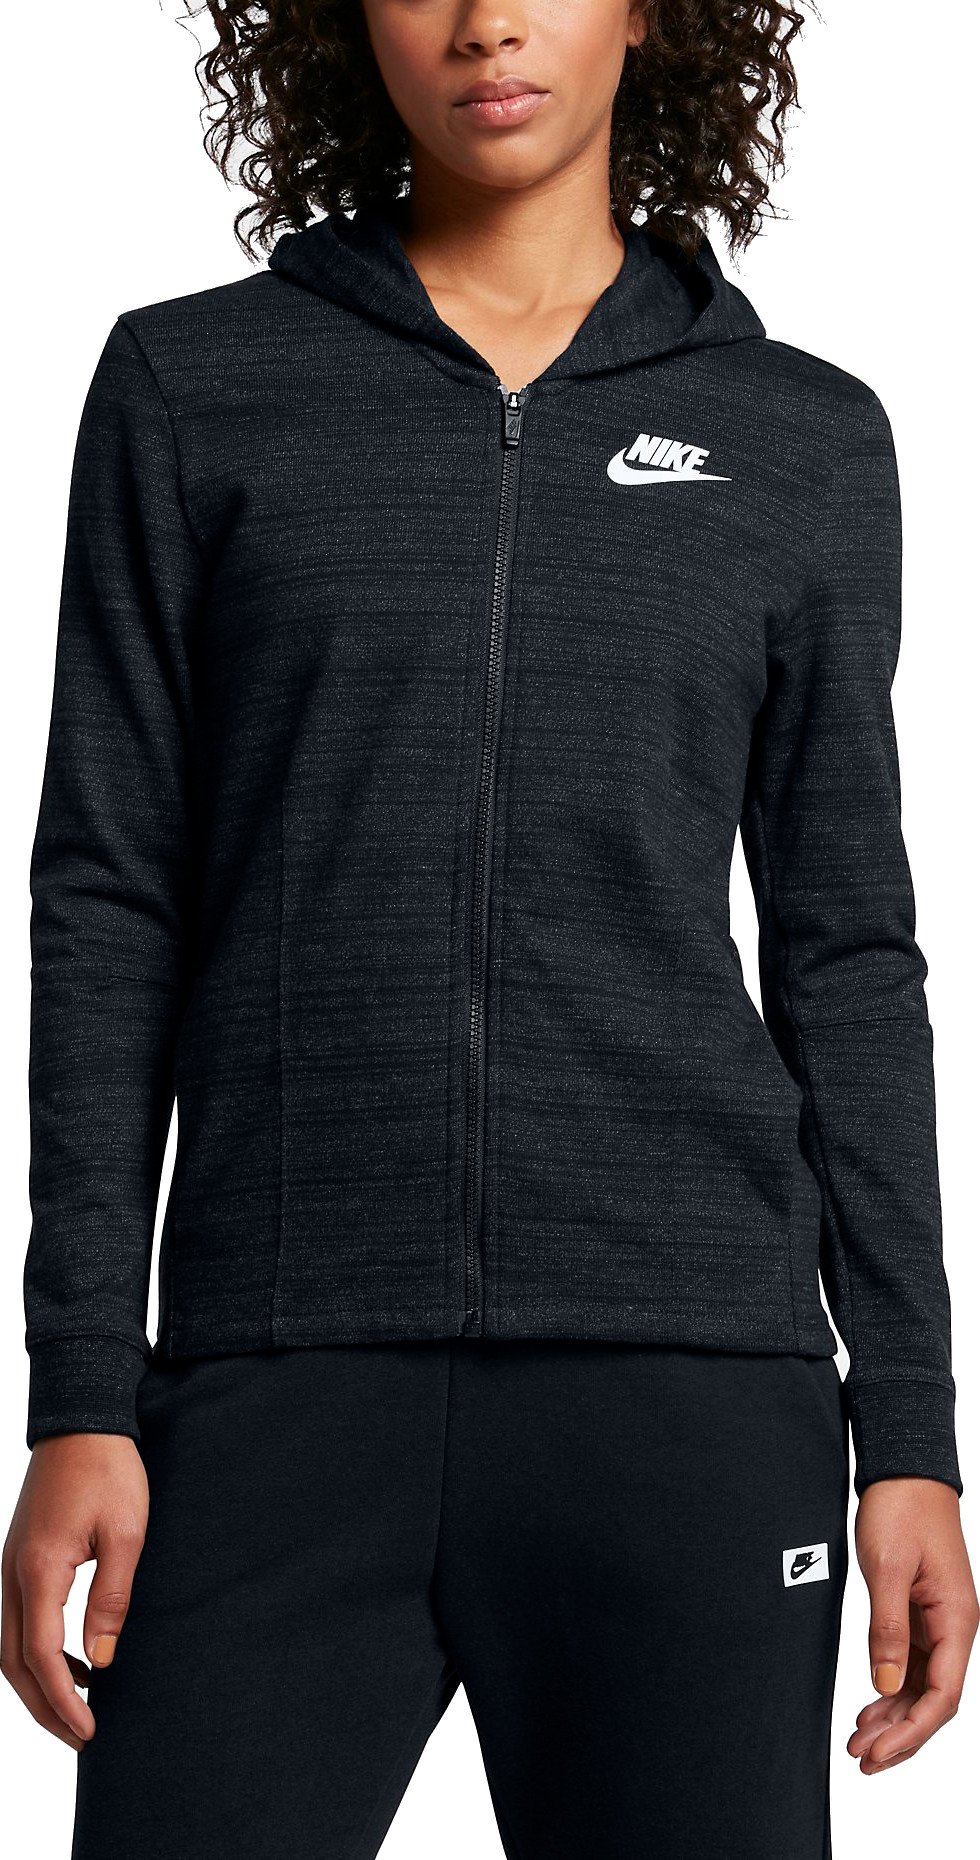 Hooded jacket Nike W NSW AV15 JKT KNT - Top4Fitness.com